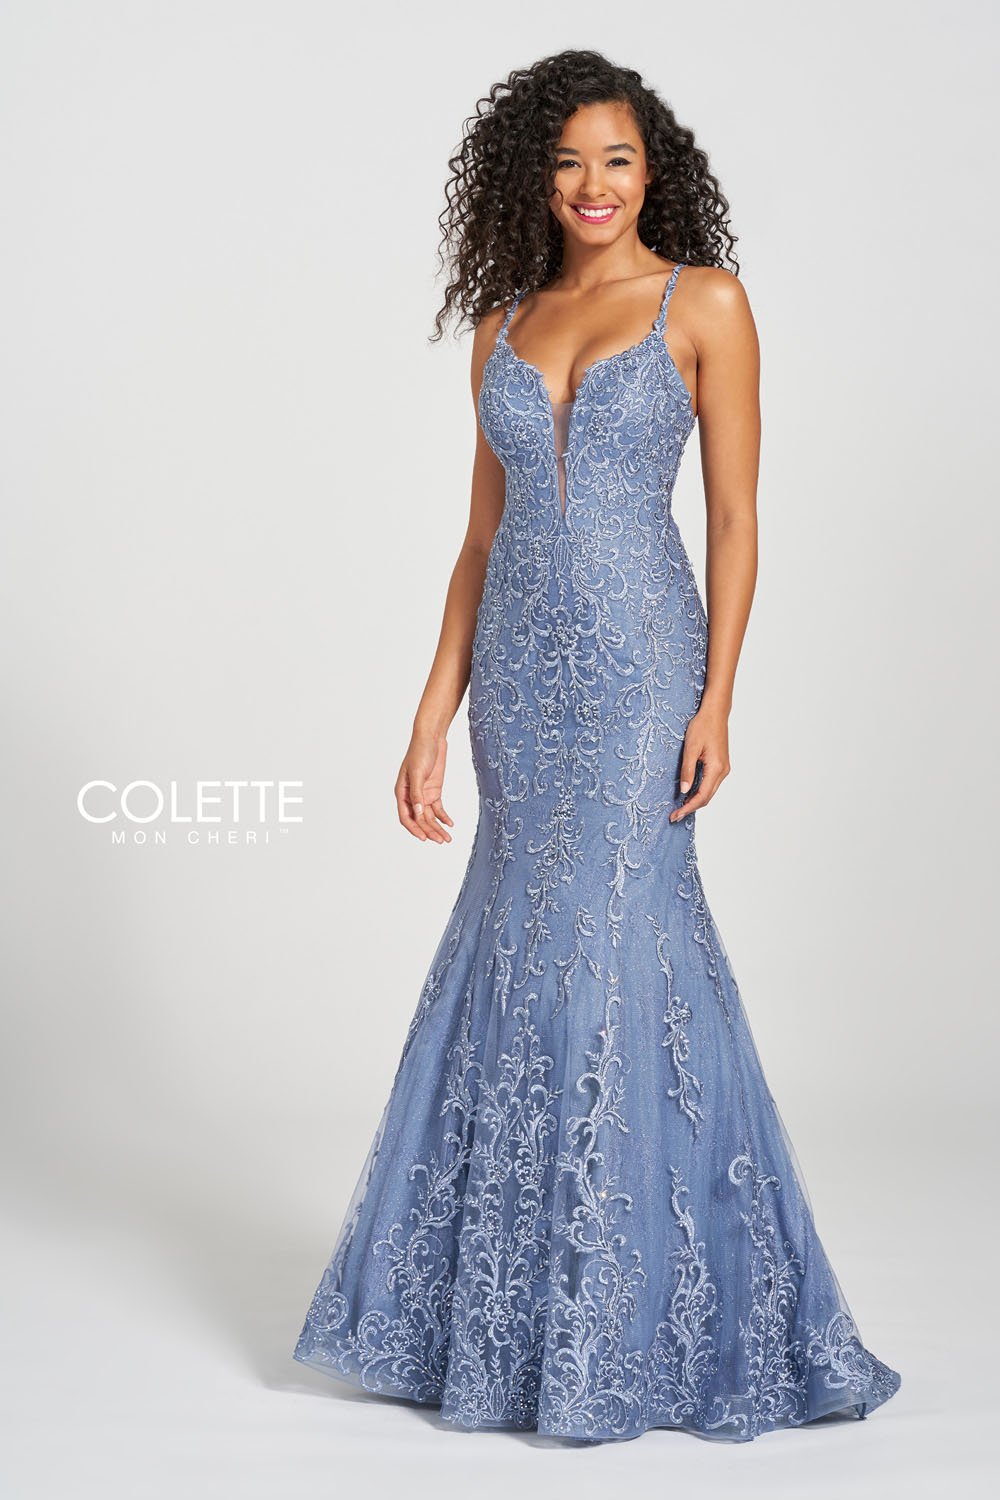 Colette Dresses – InternationalProm.com